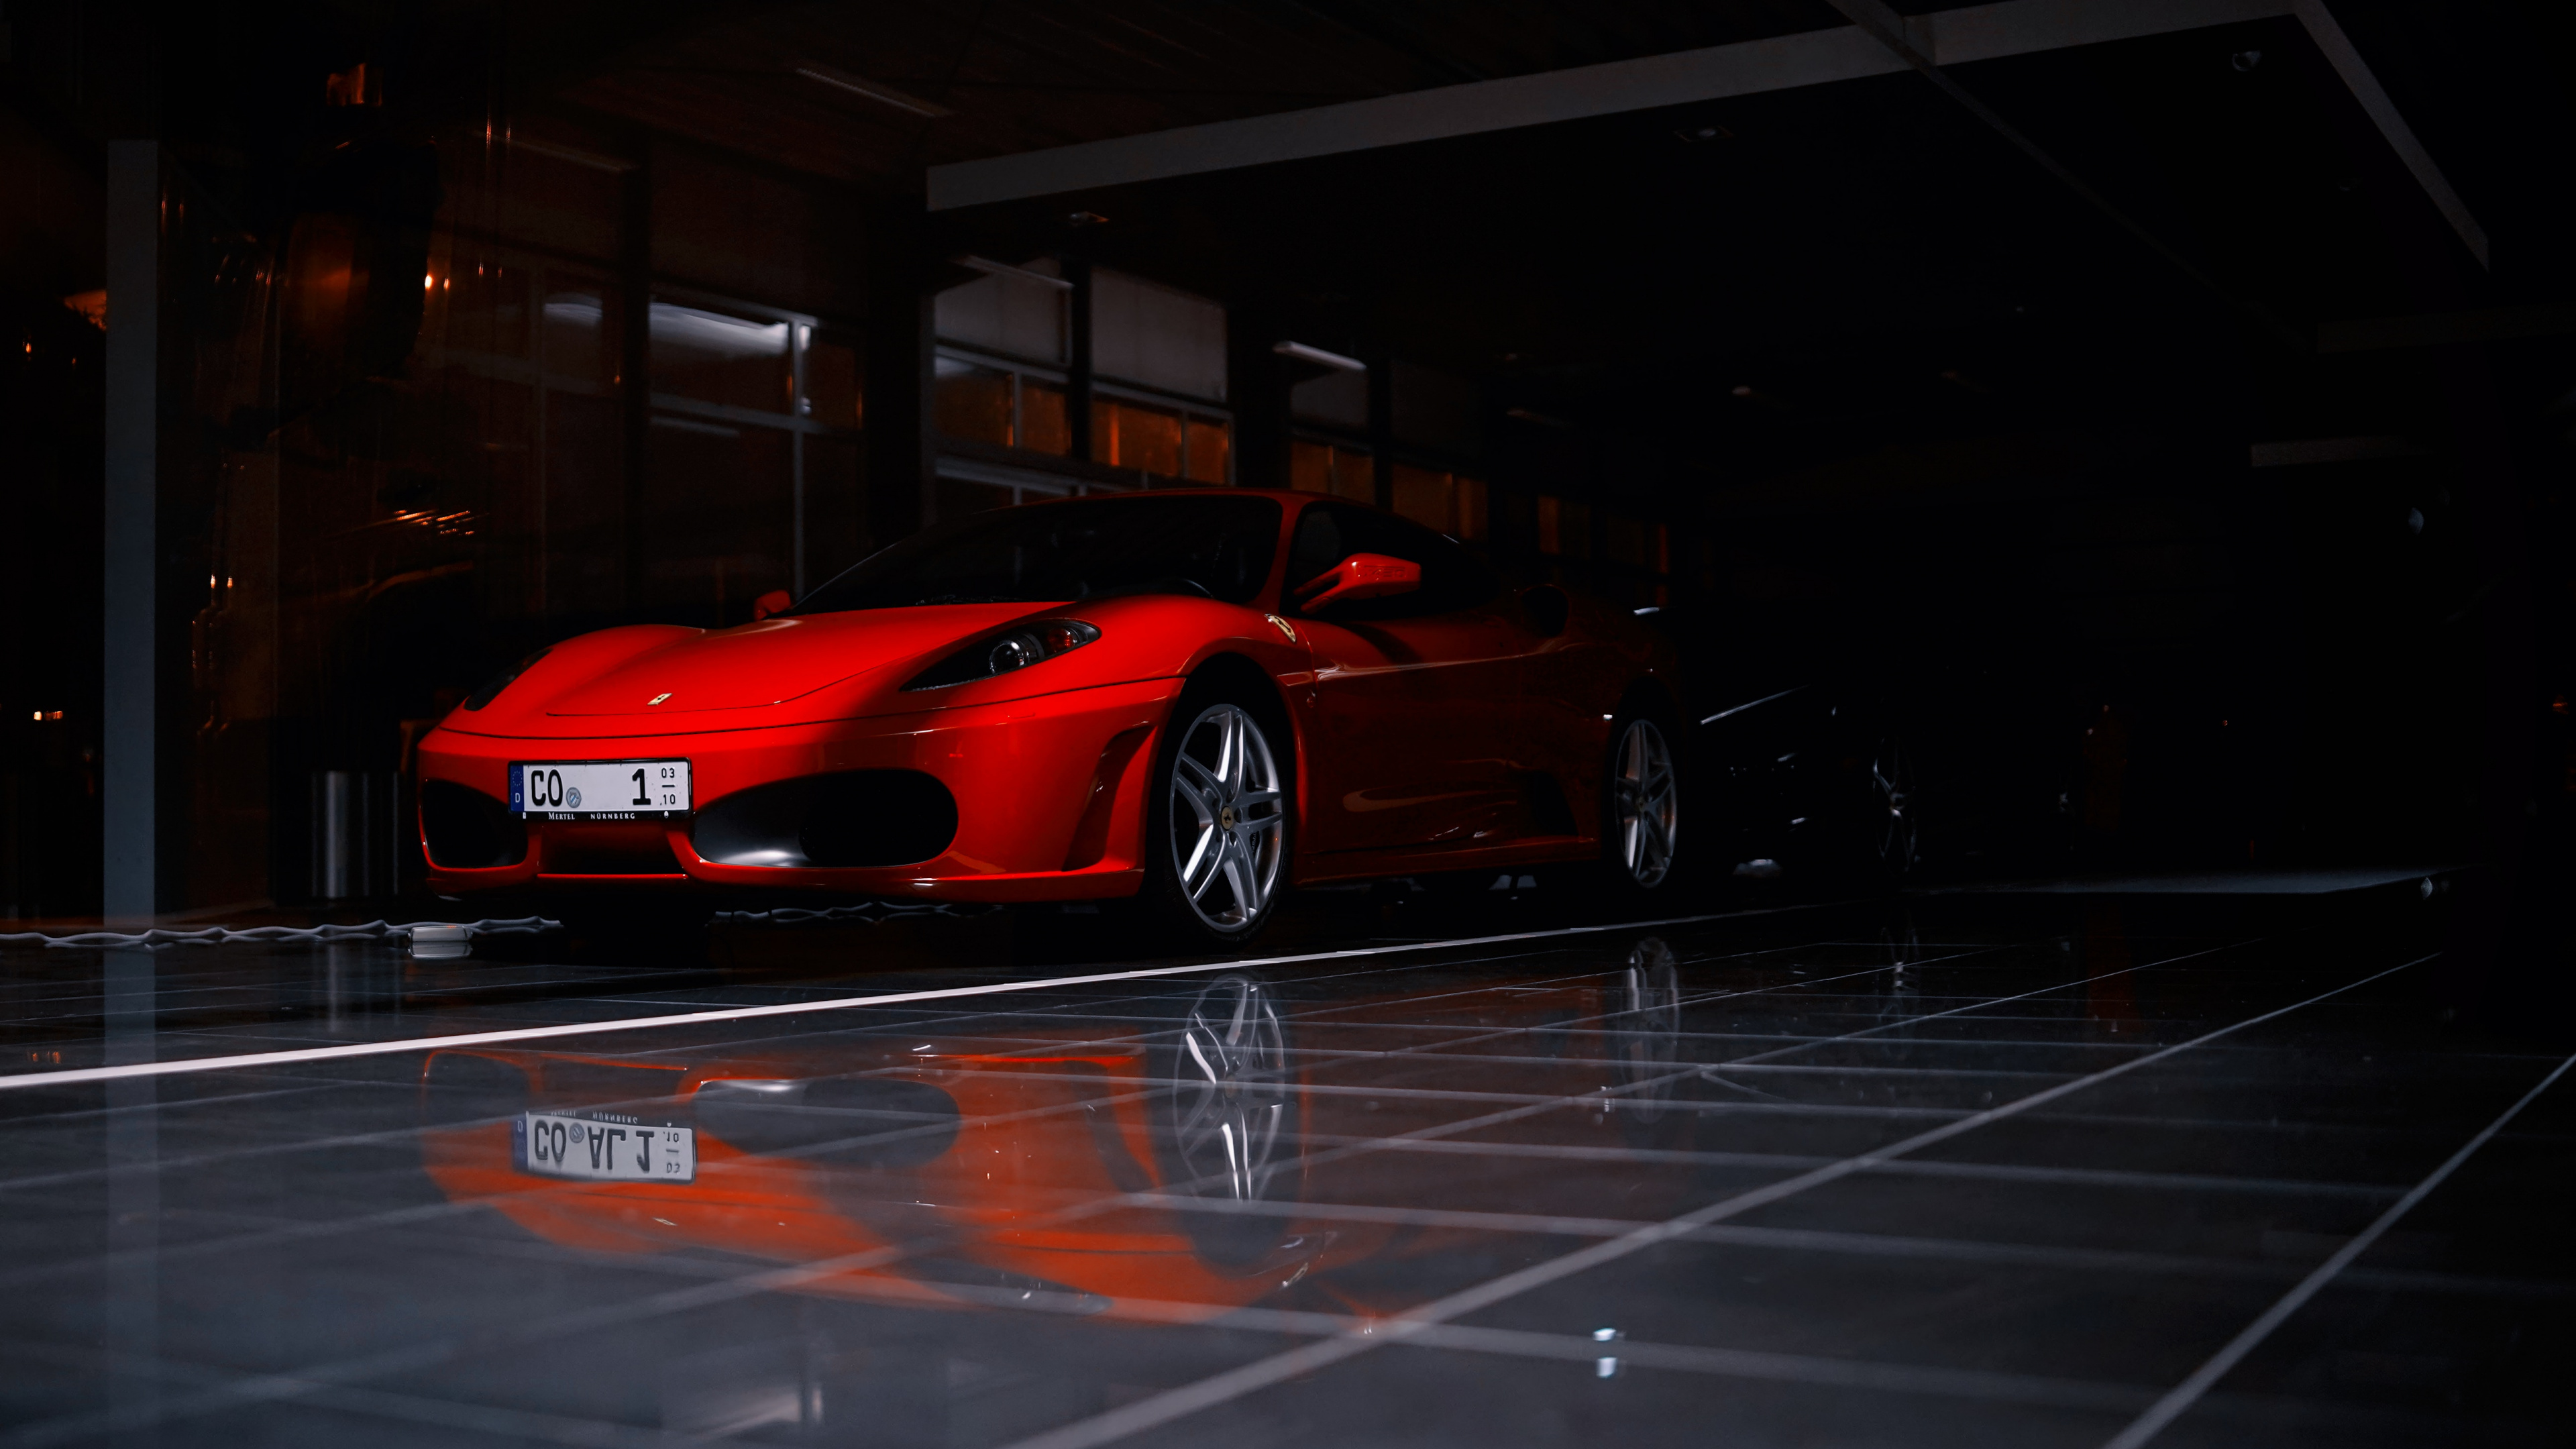 Roter Ferrari 458 Italia Auf Parkplatz Geparkt. Wallpaper in 3840x2160 Resolution